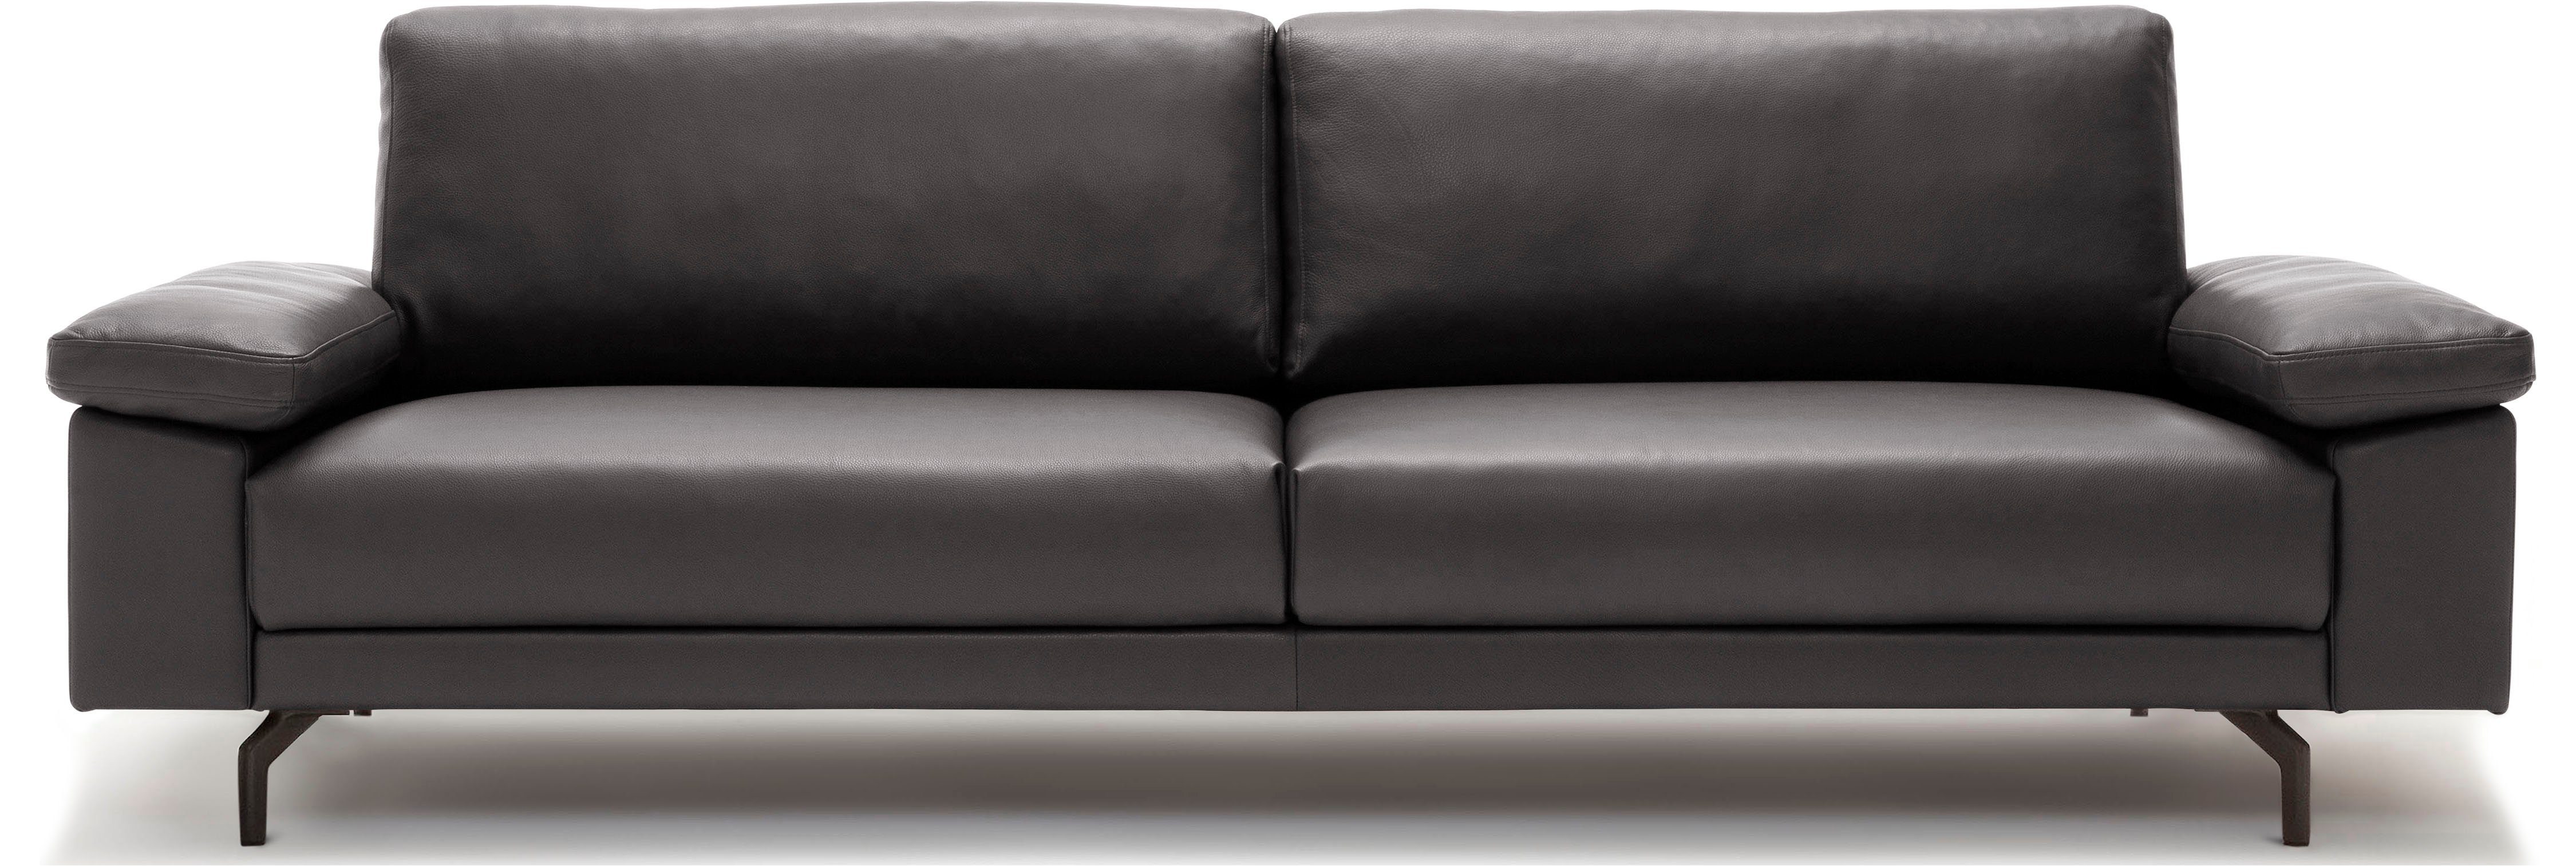 hs.450 3-Sitzer hülsta sofa